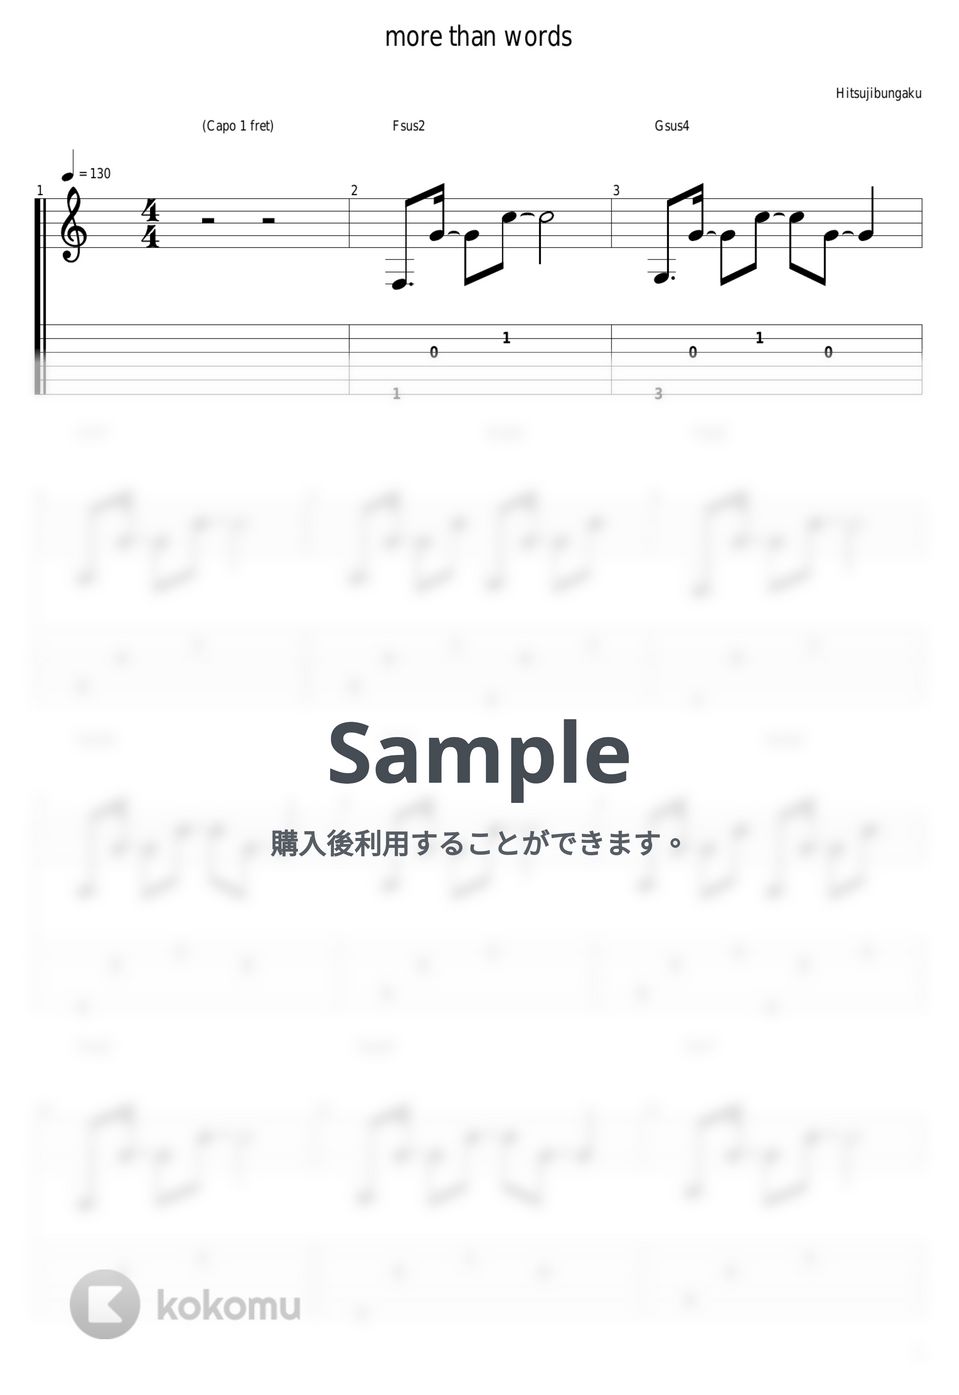 羊文学 - more than words by guitar cover with tab